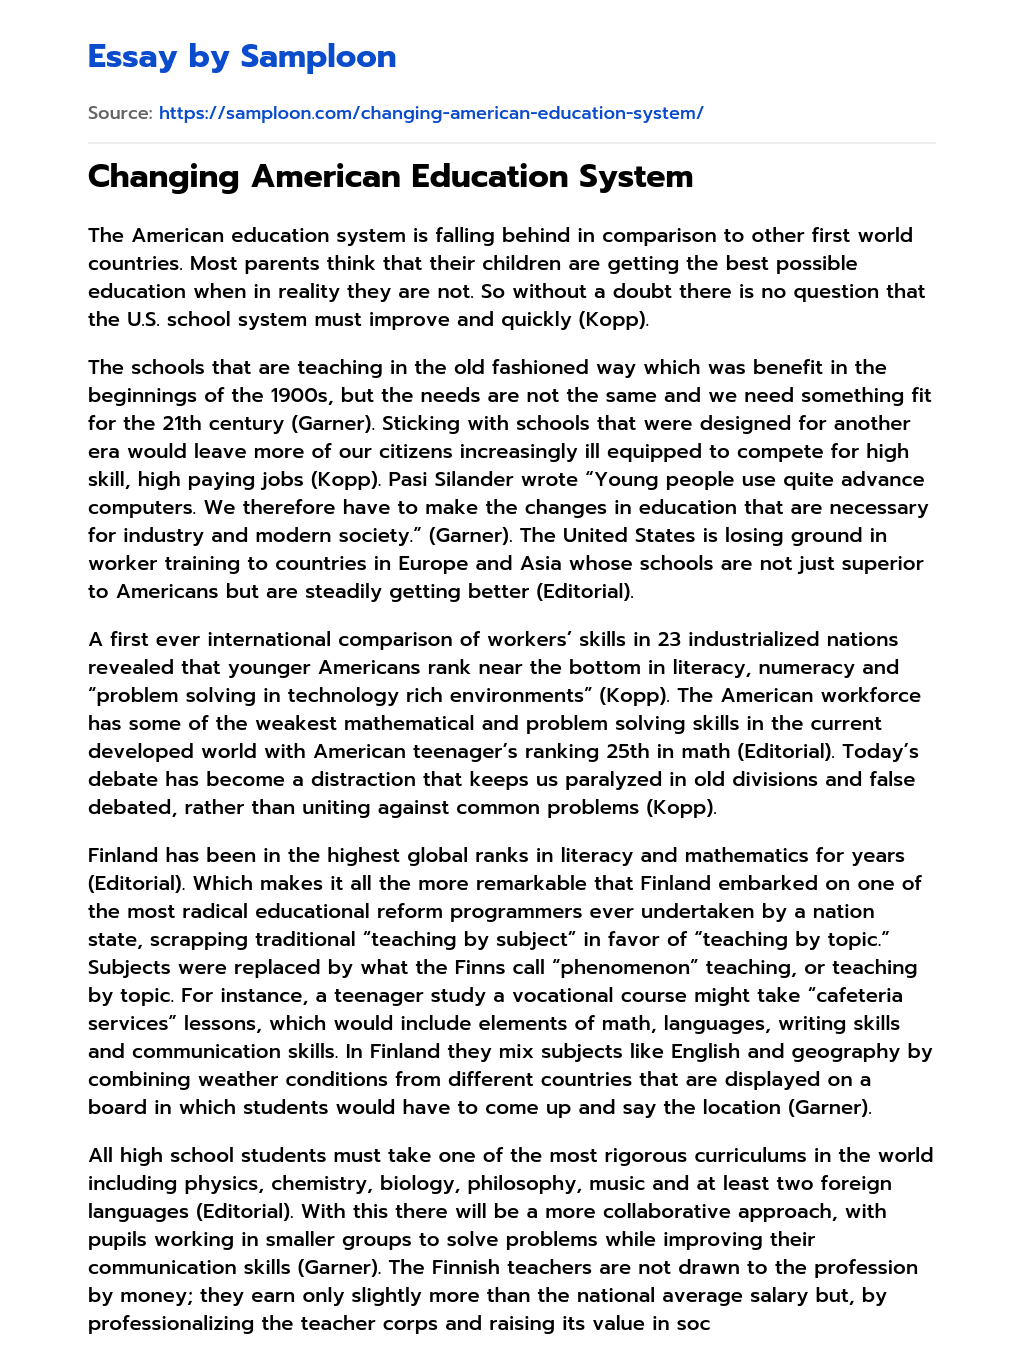 american education system argumentative essay